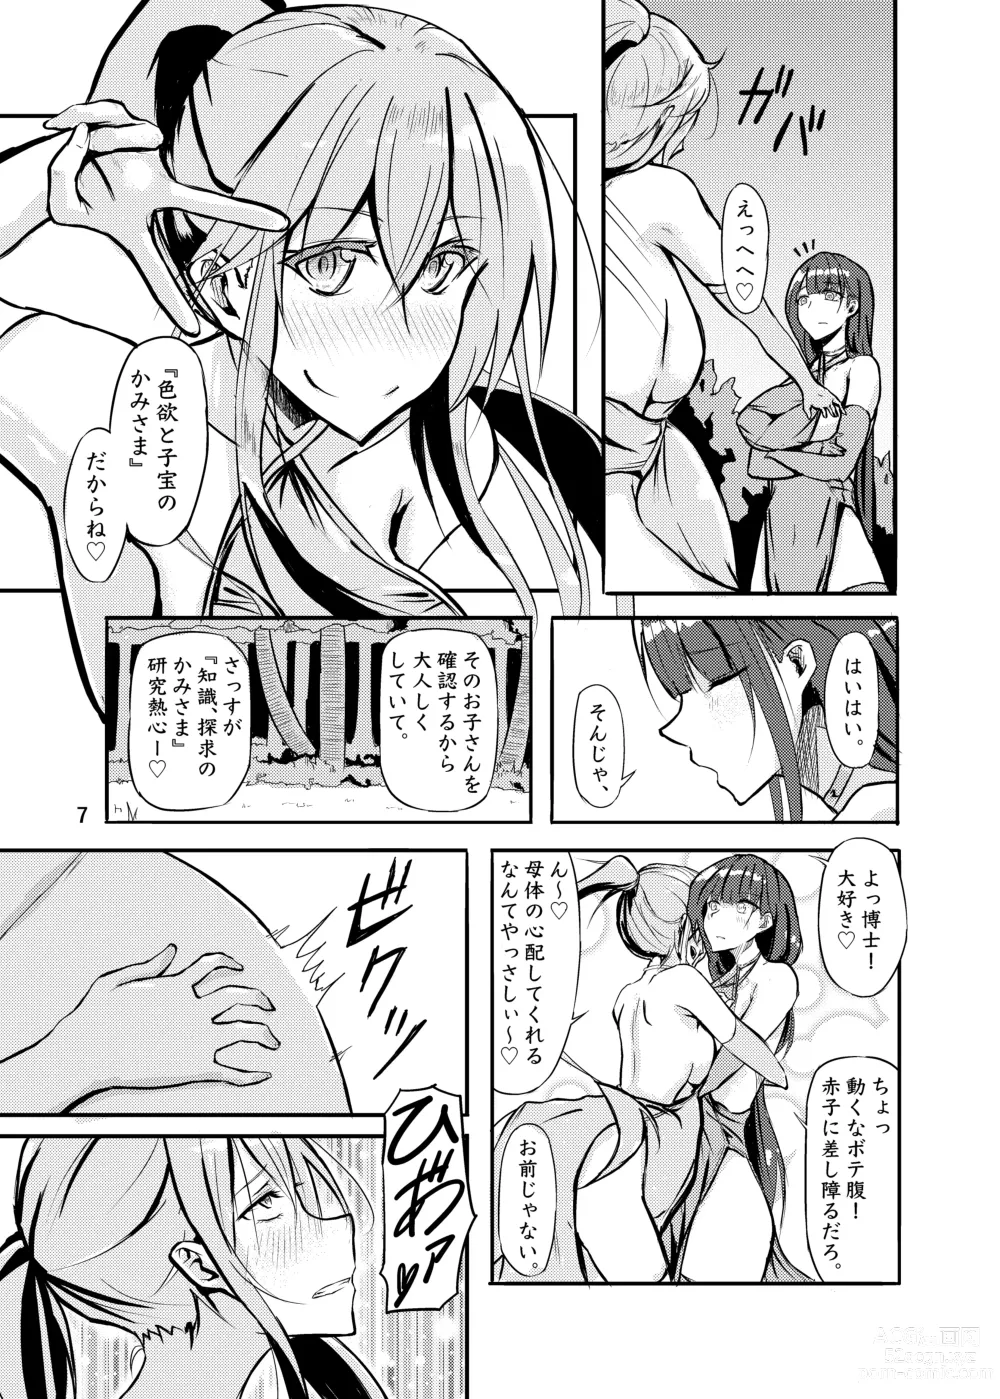 Page 7 of doujinshi 800-man Hiki no Kami-sama.